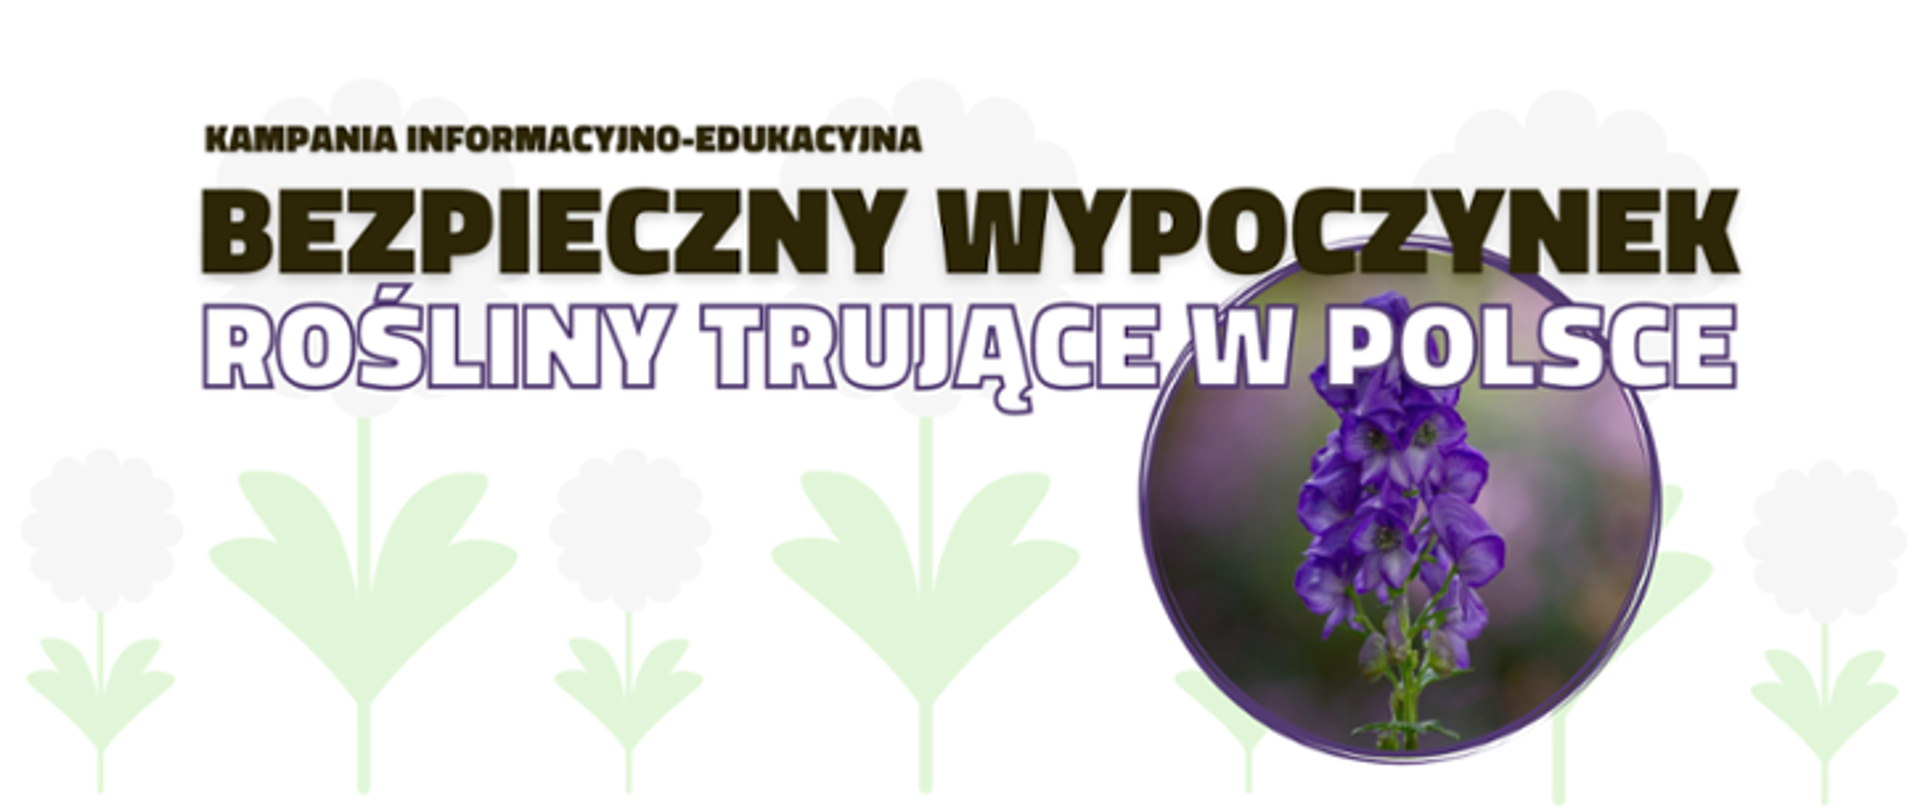 Zdjęcie przedstawia hasło kampami Bezpieczny wypoczynek - Rośliny Trujące w Polsce